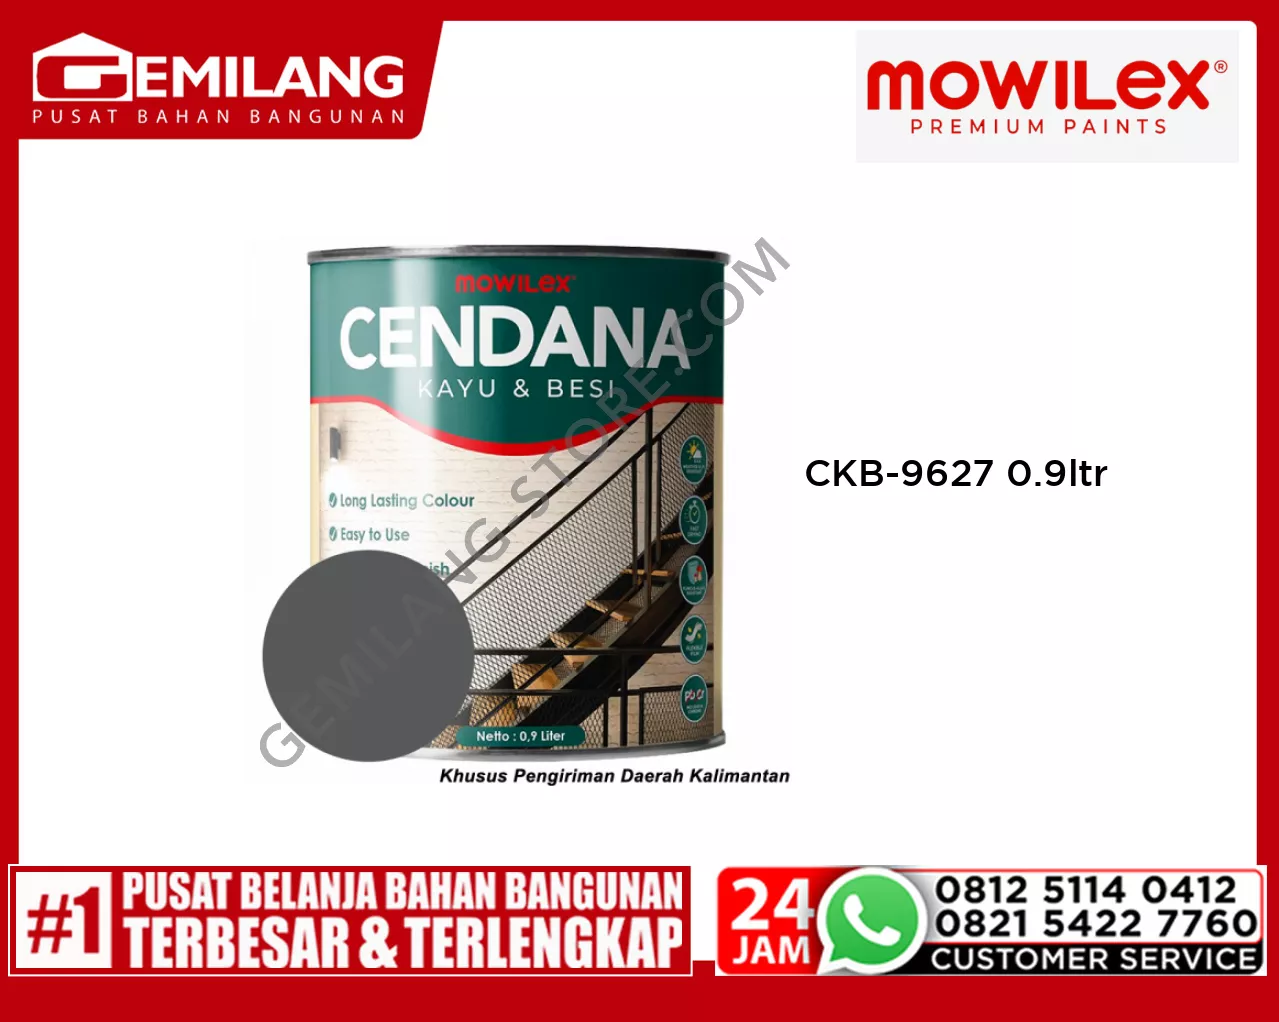 MOWILEX CENDANA KAYU & BESI CKB-9627 TITANIUM STEEL 0.9ltr